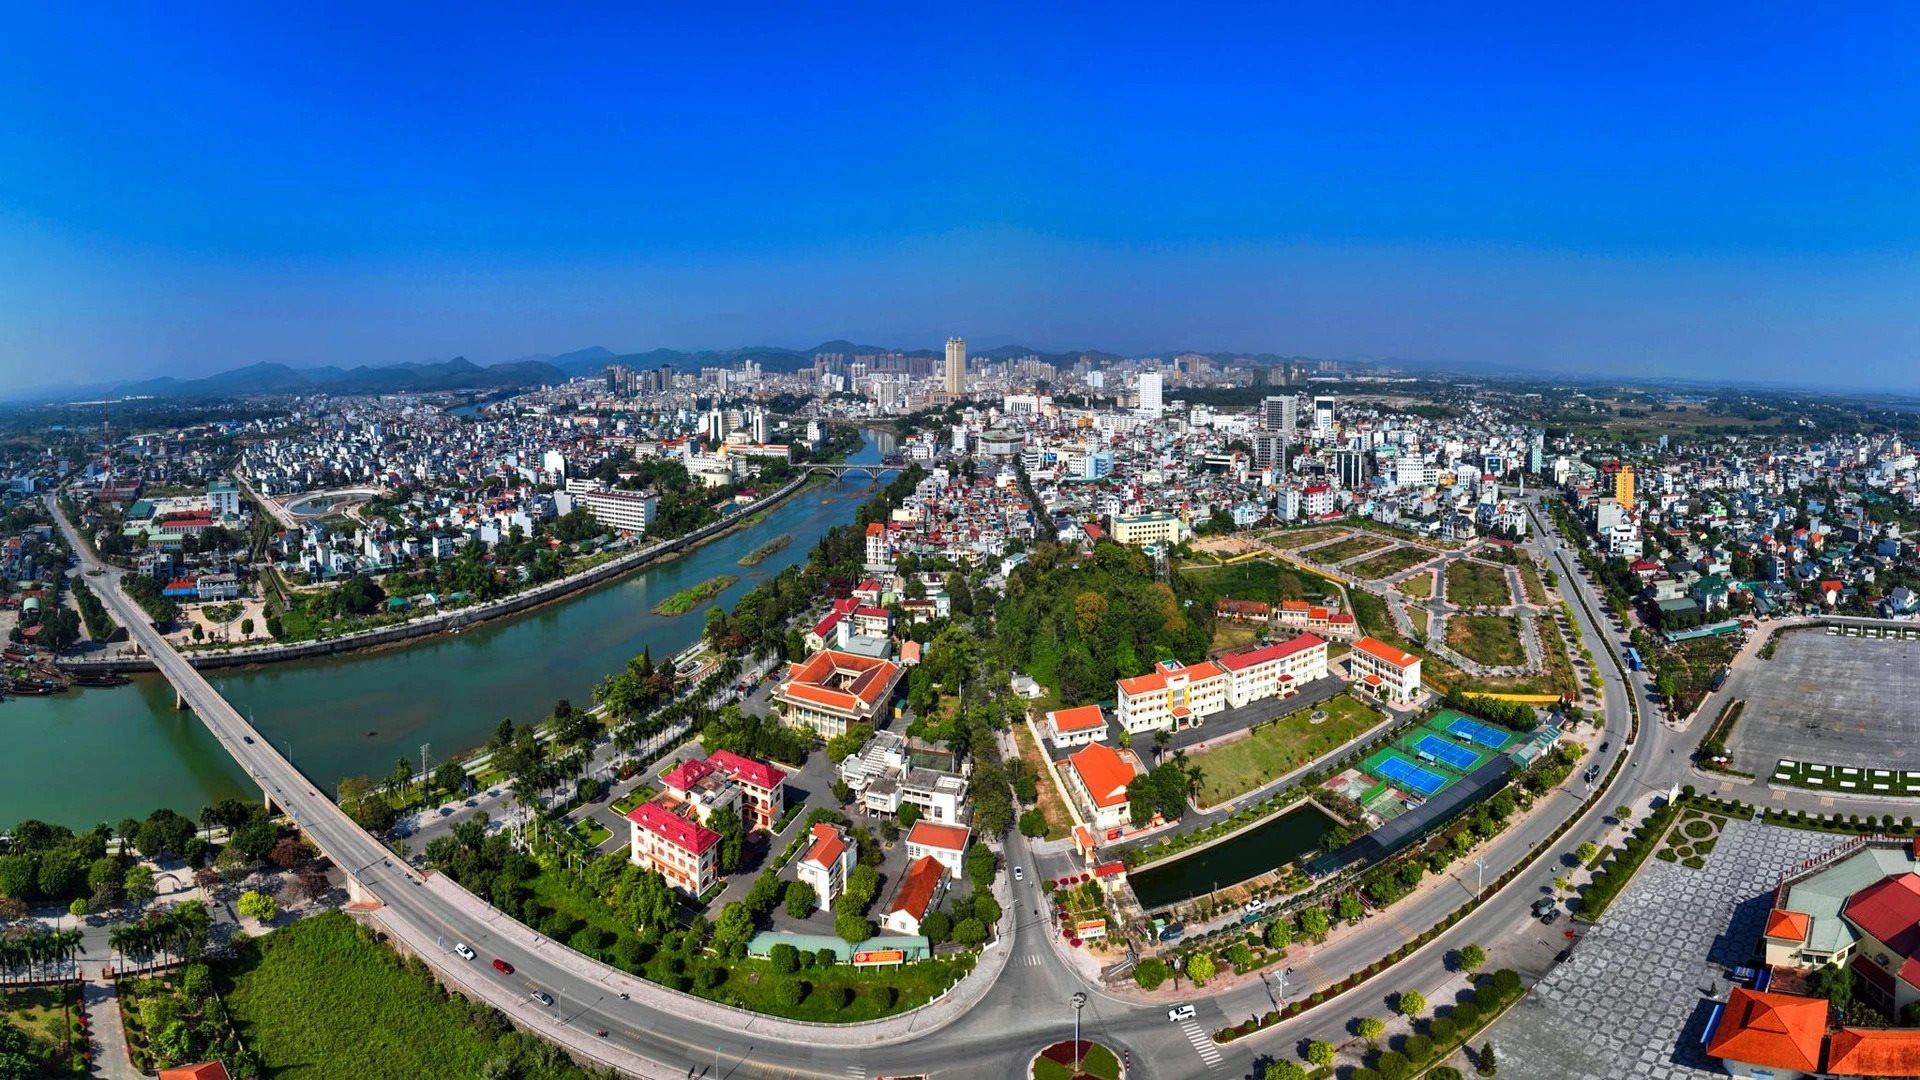 Điểm cuối tuyến cao tốc dài và hiện đại nhất cả nước, nơi có khu kinh tế lớn nhất Việt Nam mà người dân có thể sang Trung Quốc “như đi chợ” - Ảnh 1.